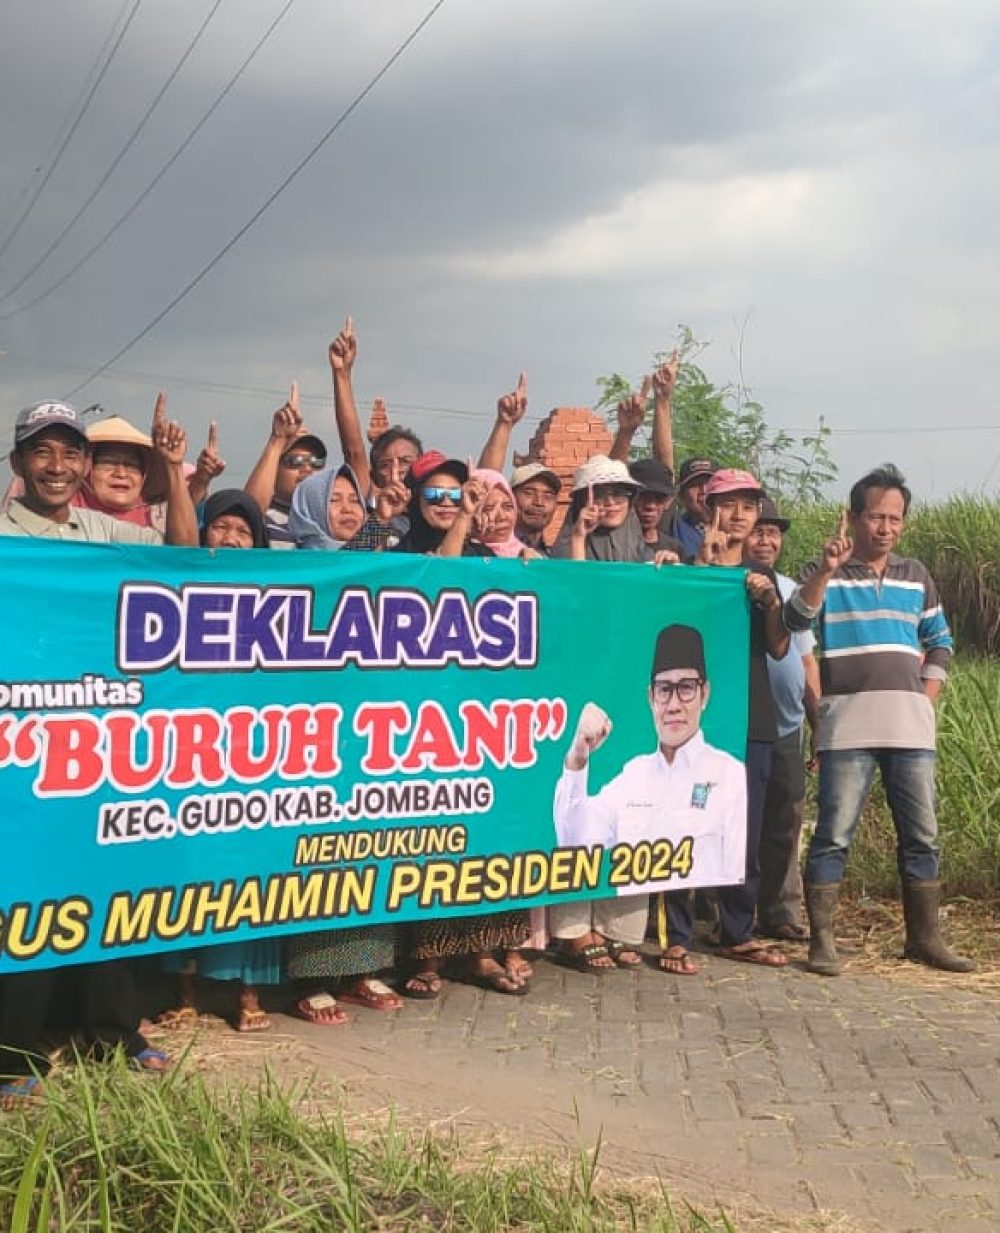 Deklarasi Gus Muhaimin Presiden oleh Komunitas buruh Tani Jombang di Gudo.